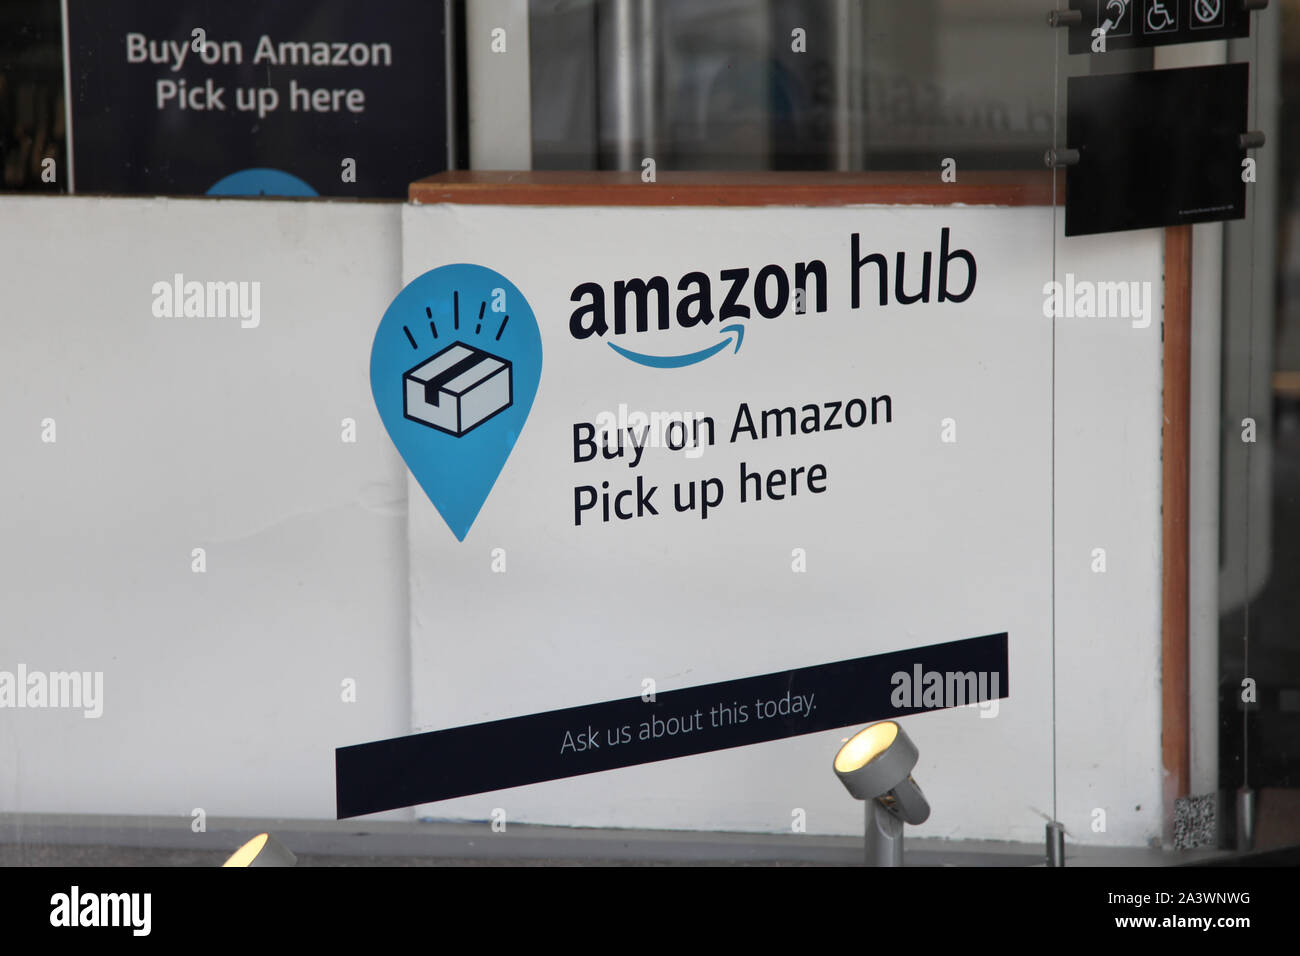 Cubo de Amazon recoger firmar dentro de una ventana de la tienda donde la  publicidad para recoger sus paquetes de Amazon, 2019 Fotografía de stock -  Alamy